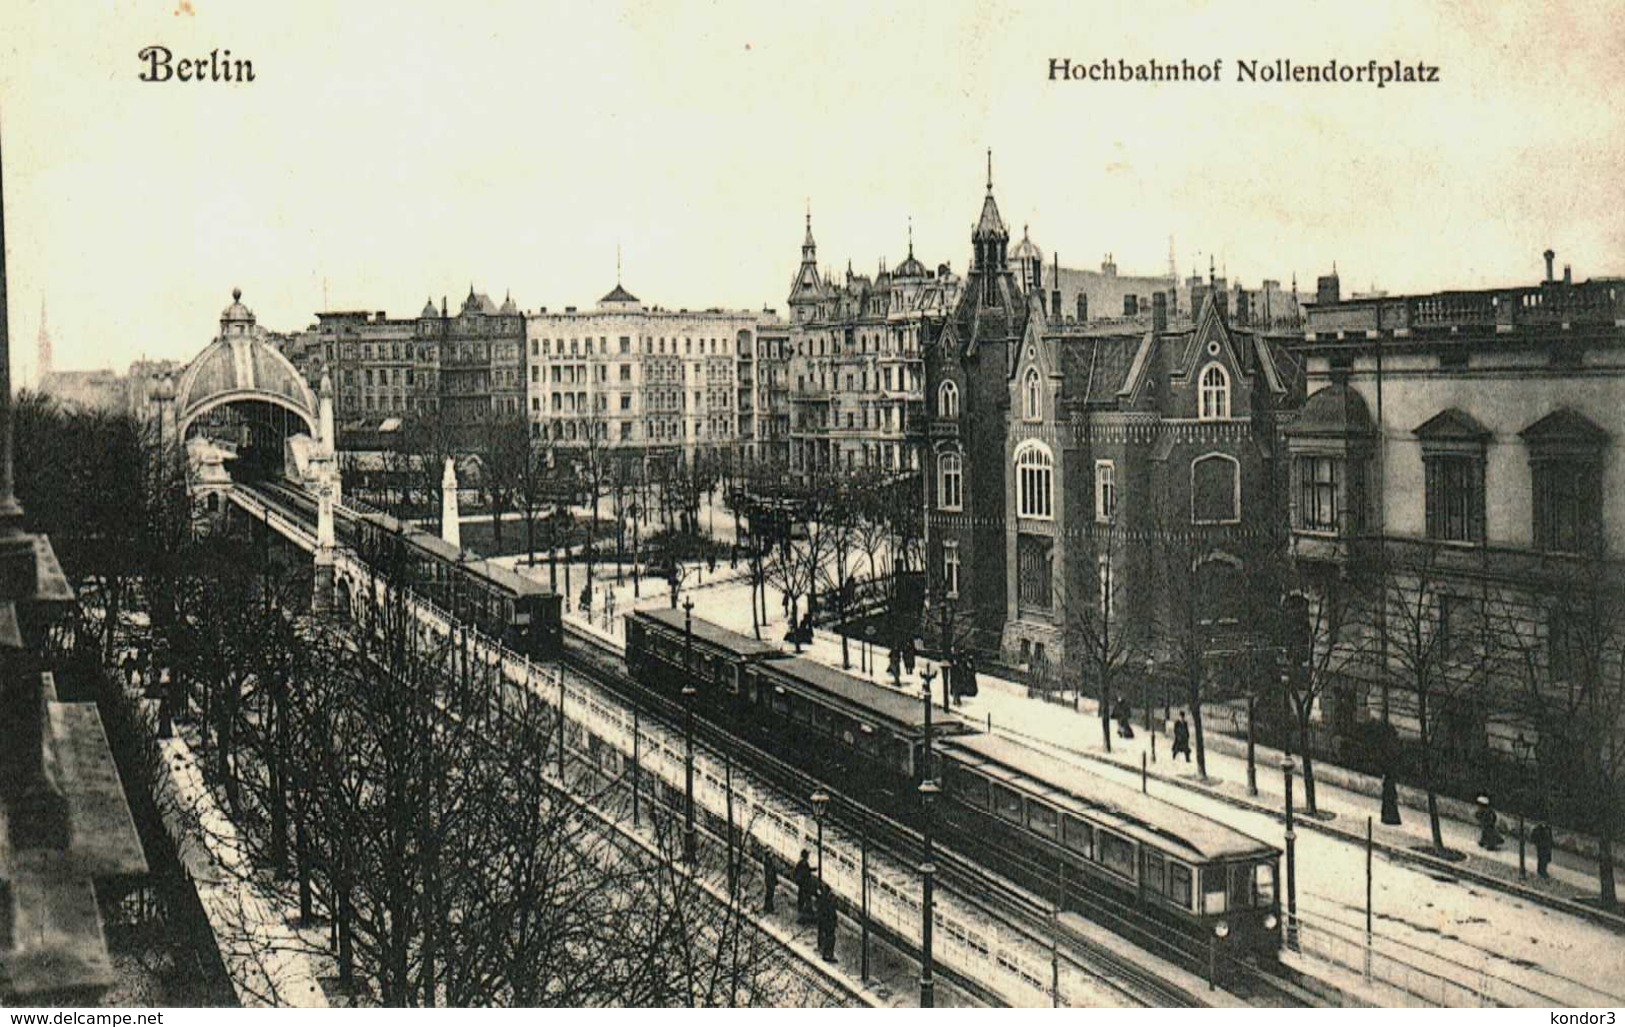 Berlin. Hochbahnhof Nollendorfplatz - Koepenick